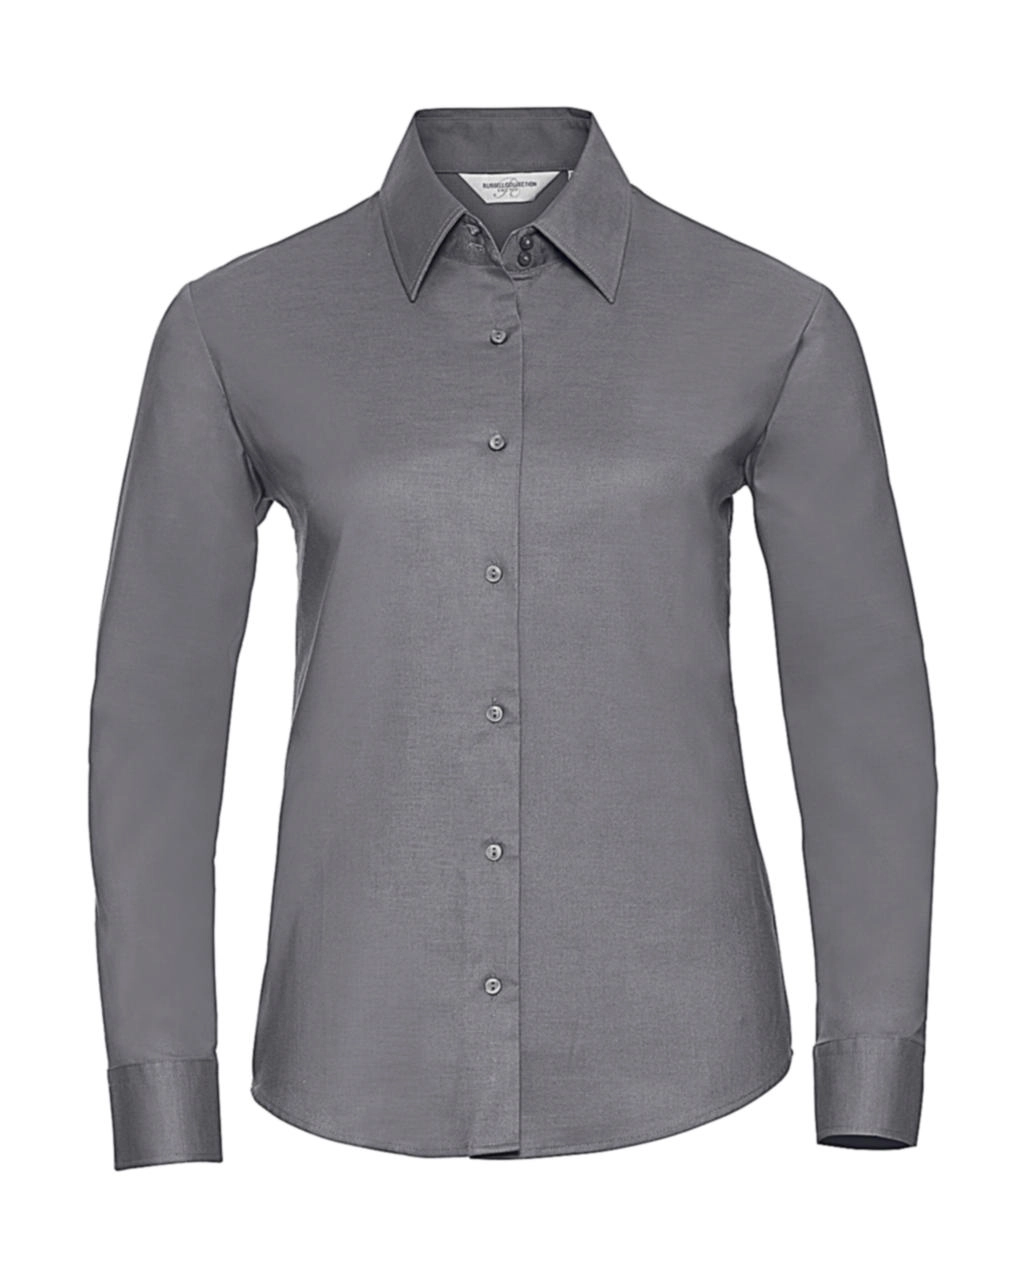 Ladies` Classic Oxford Shirt LS zum Besticken und Bedrucken in der Farbe Silver mit Ihren Logo, Schriftzug oder Motiv.